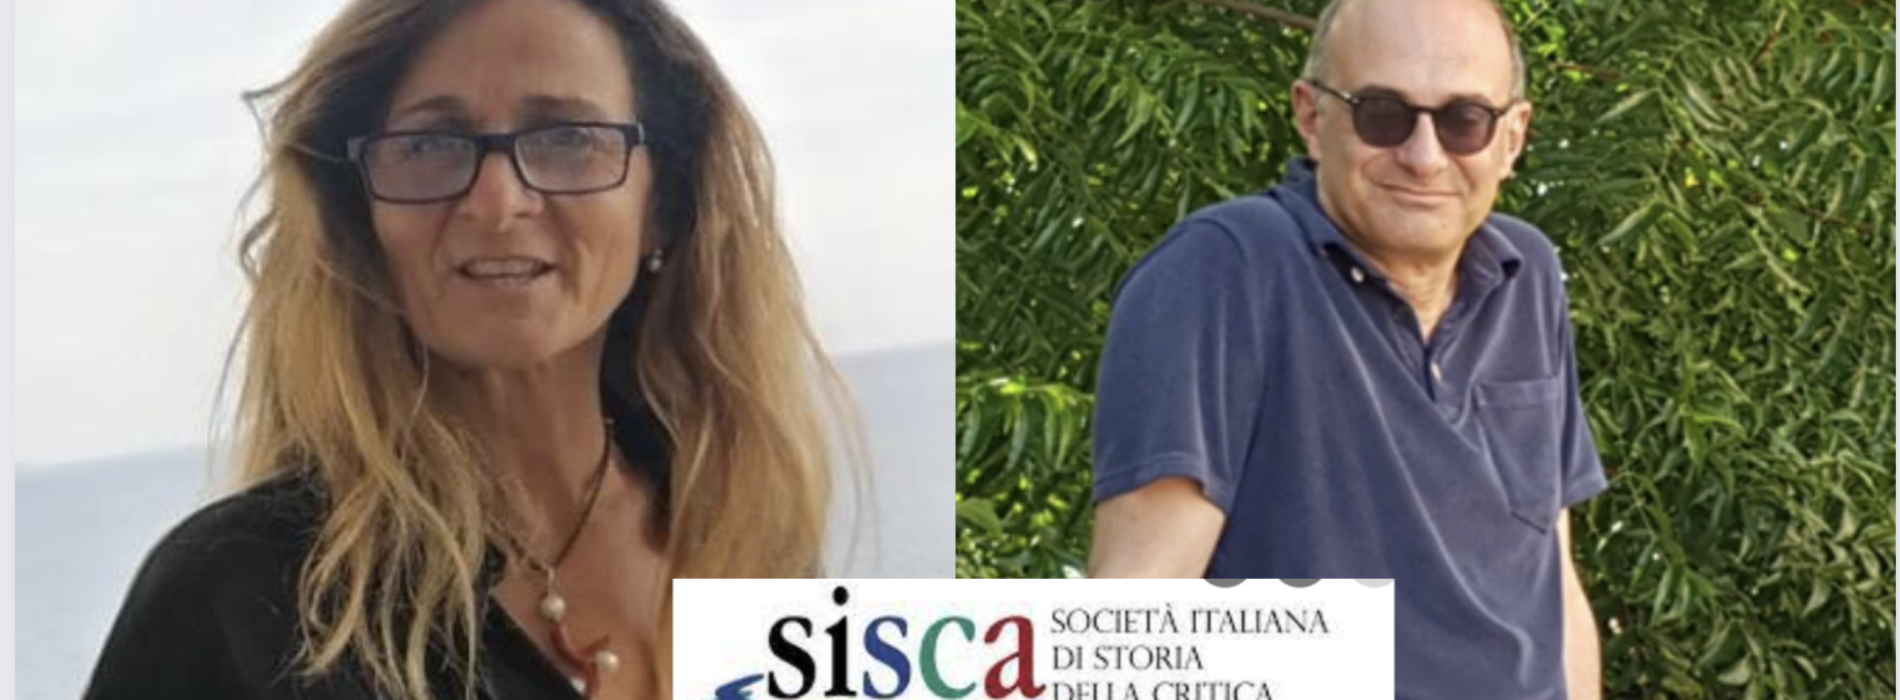 Sisca, si riunisce la Società italiana Storia della critica d’arte